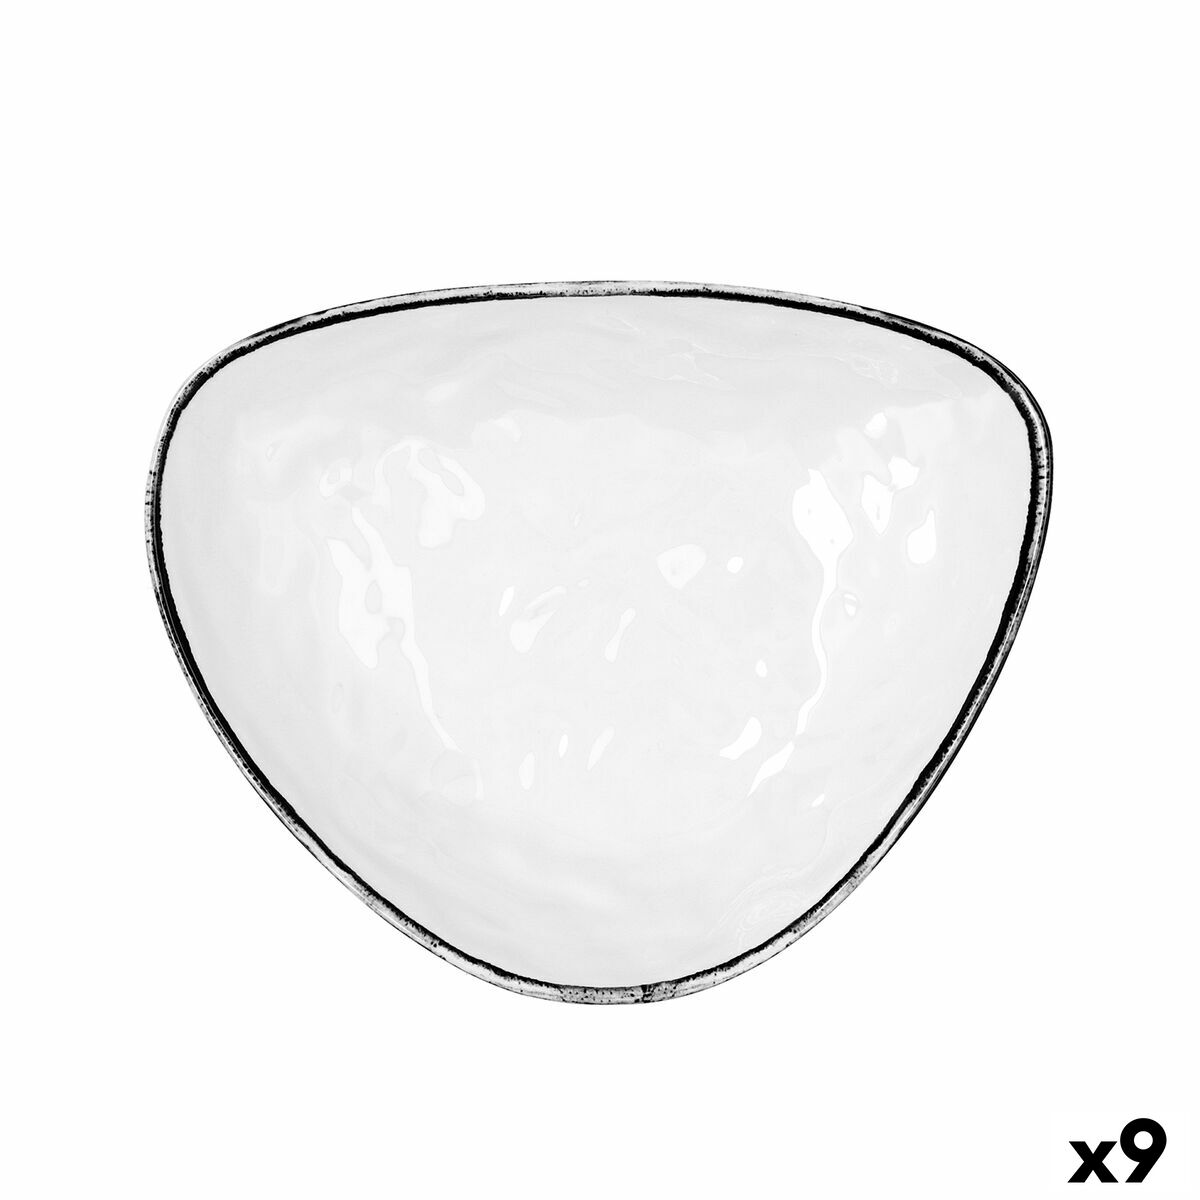 Assiette plate Quid Select Filo Blanc Noir Plastique Triangulaire 26 x 21 x 5,9 cm (9 Unités)